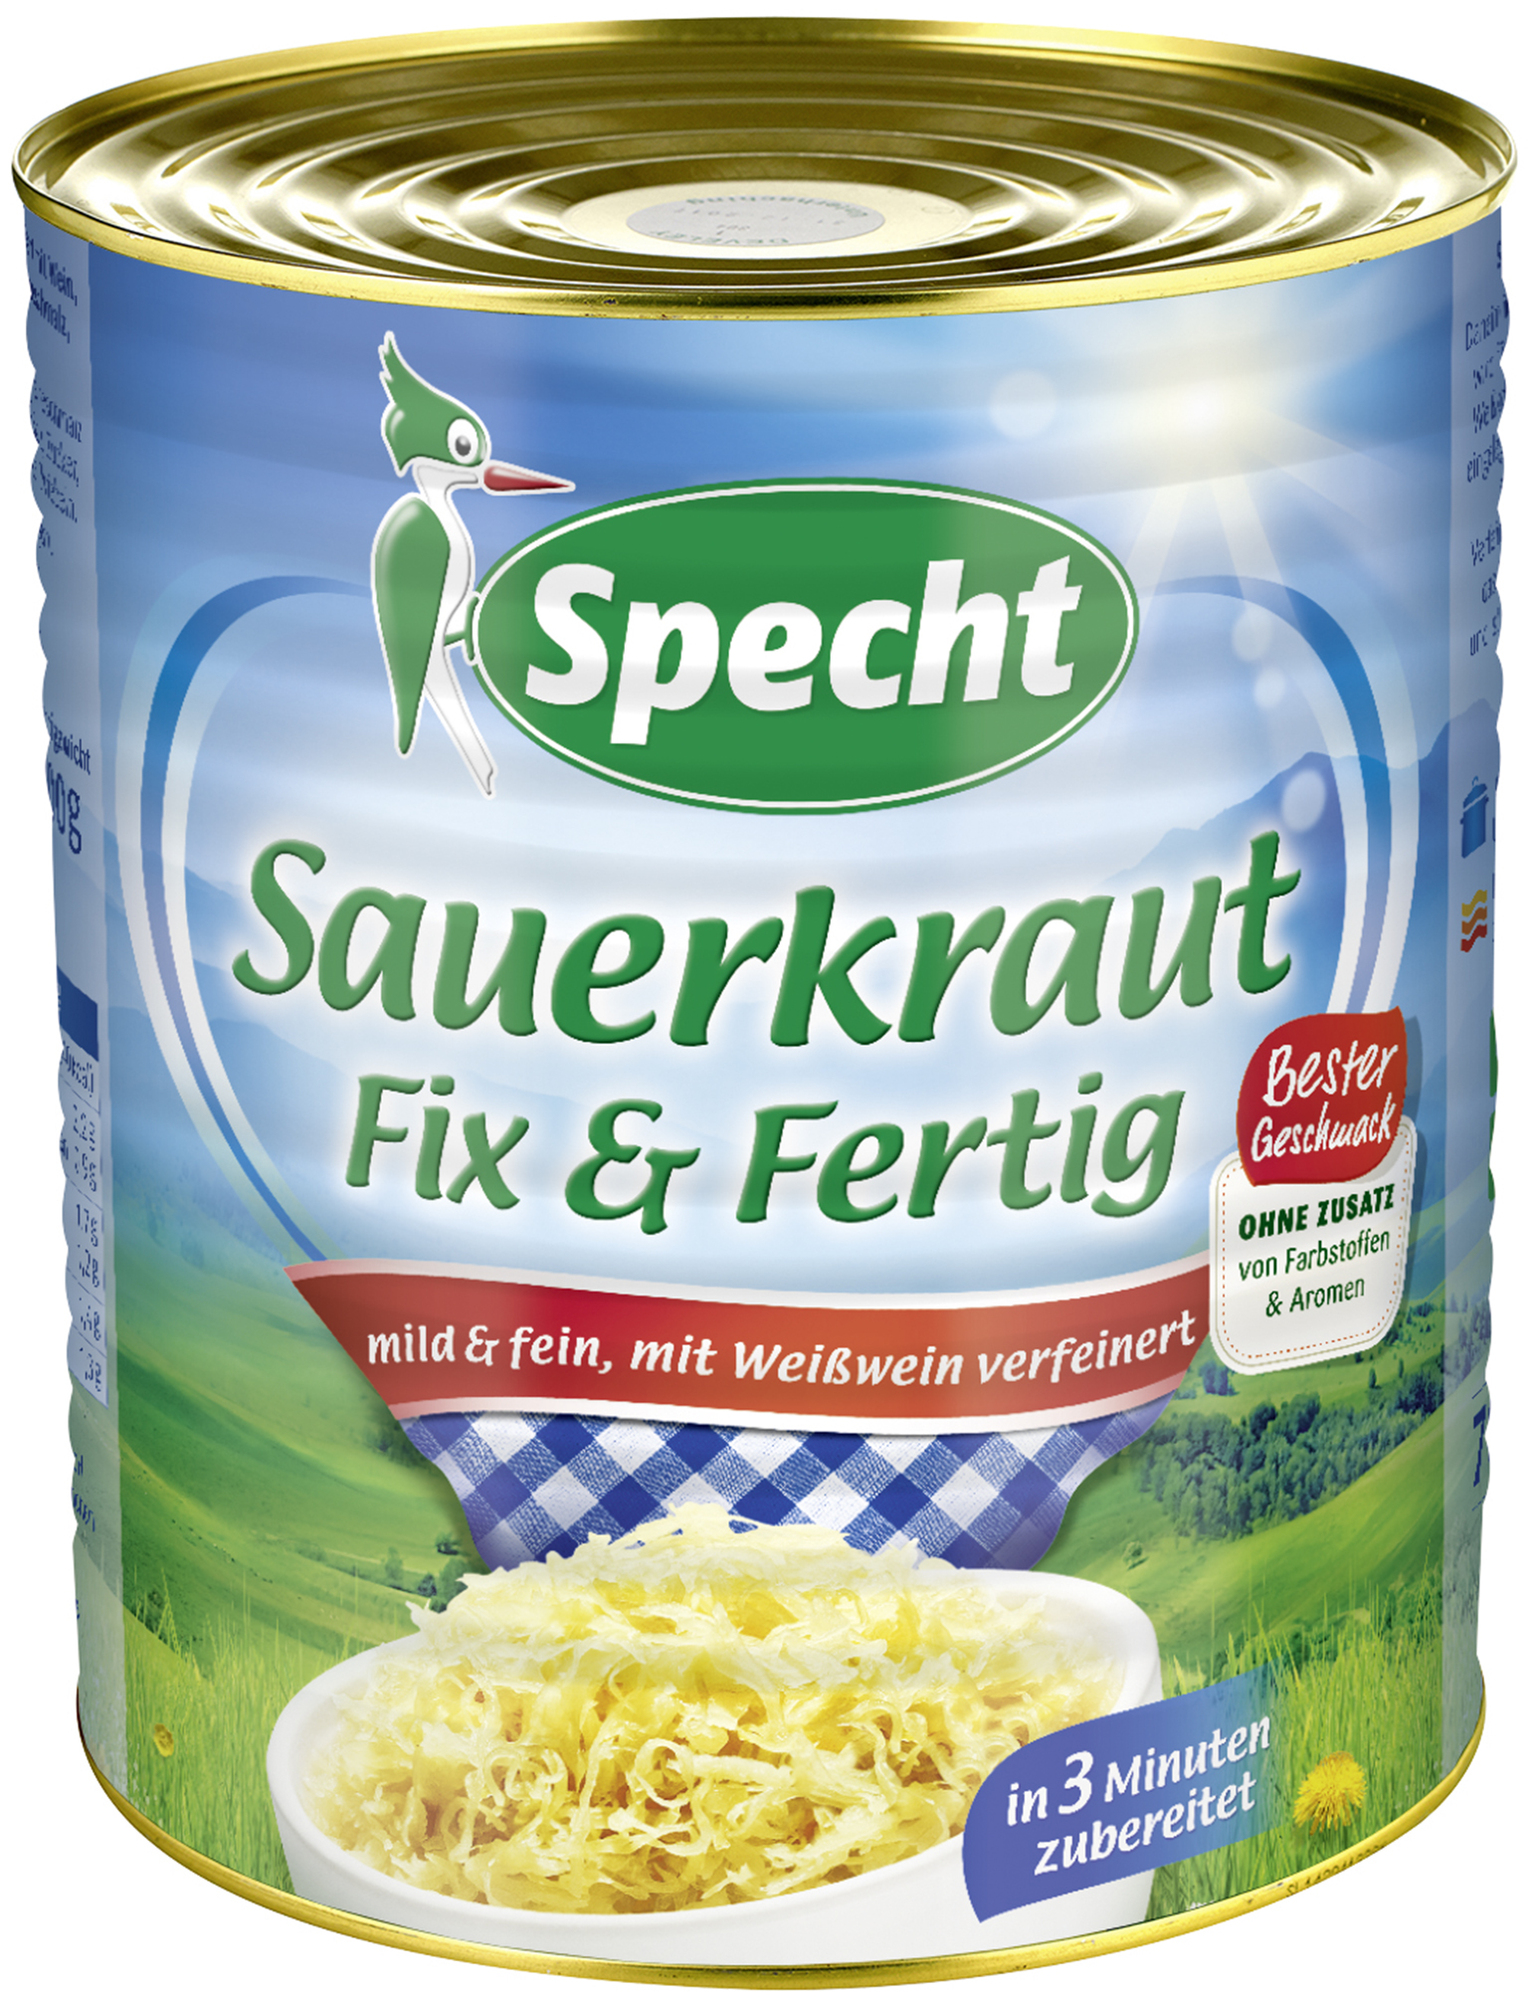 Sauerkraut Fix & Fertig 10,2ltr